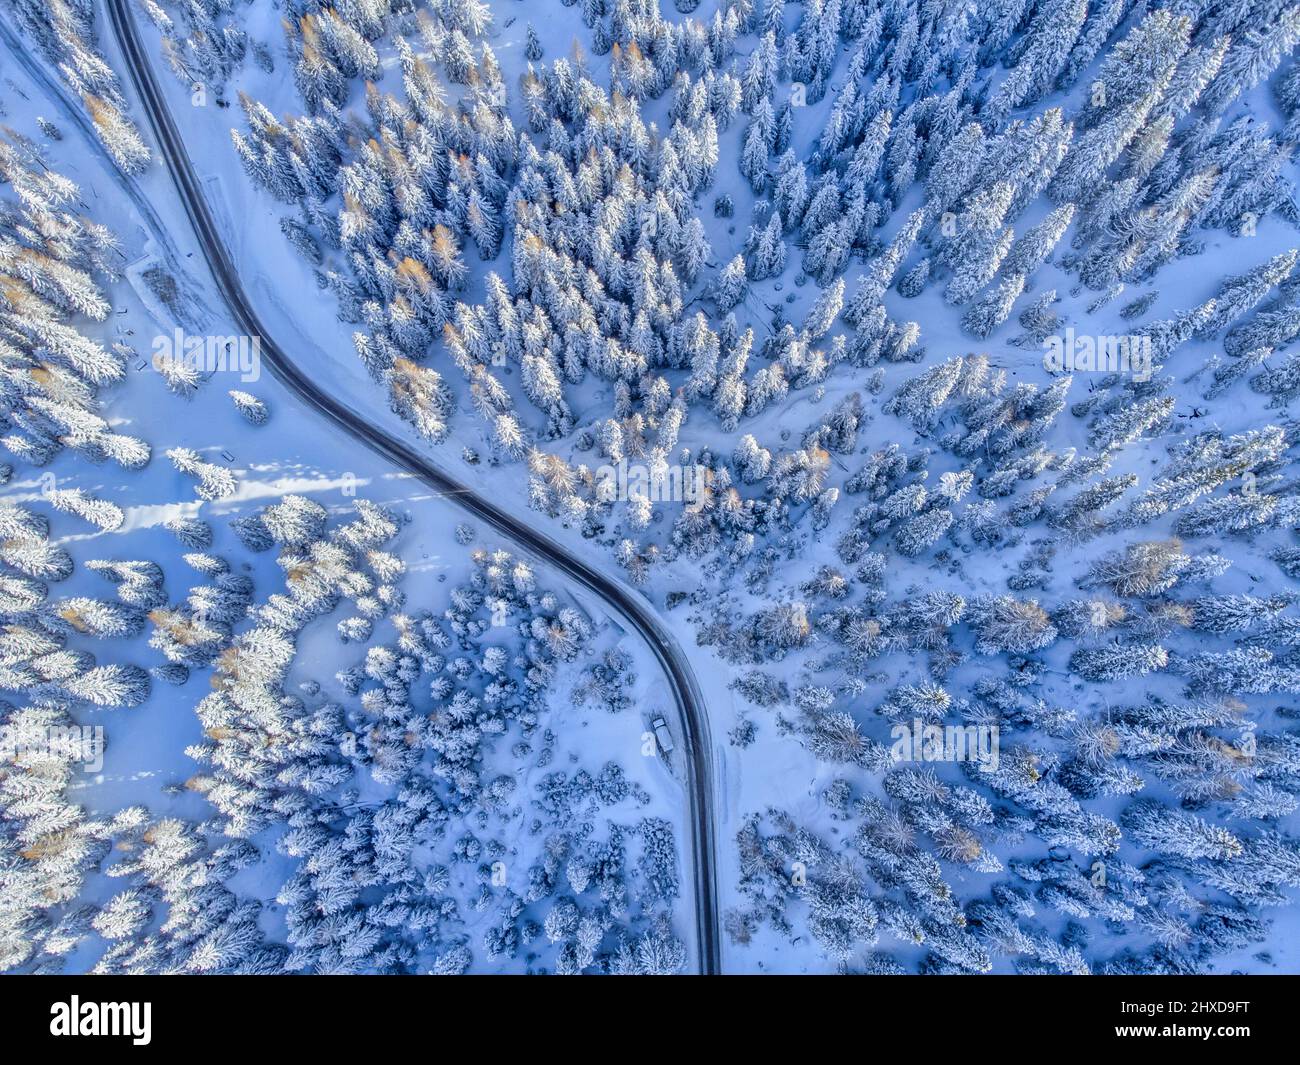 Europa, Italia, Veneto, provincia de Belluno, Dolomitas, carretera de montaña que cruza un bosque de coníferas después de una nevada, vista desde arriba Foto de stock